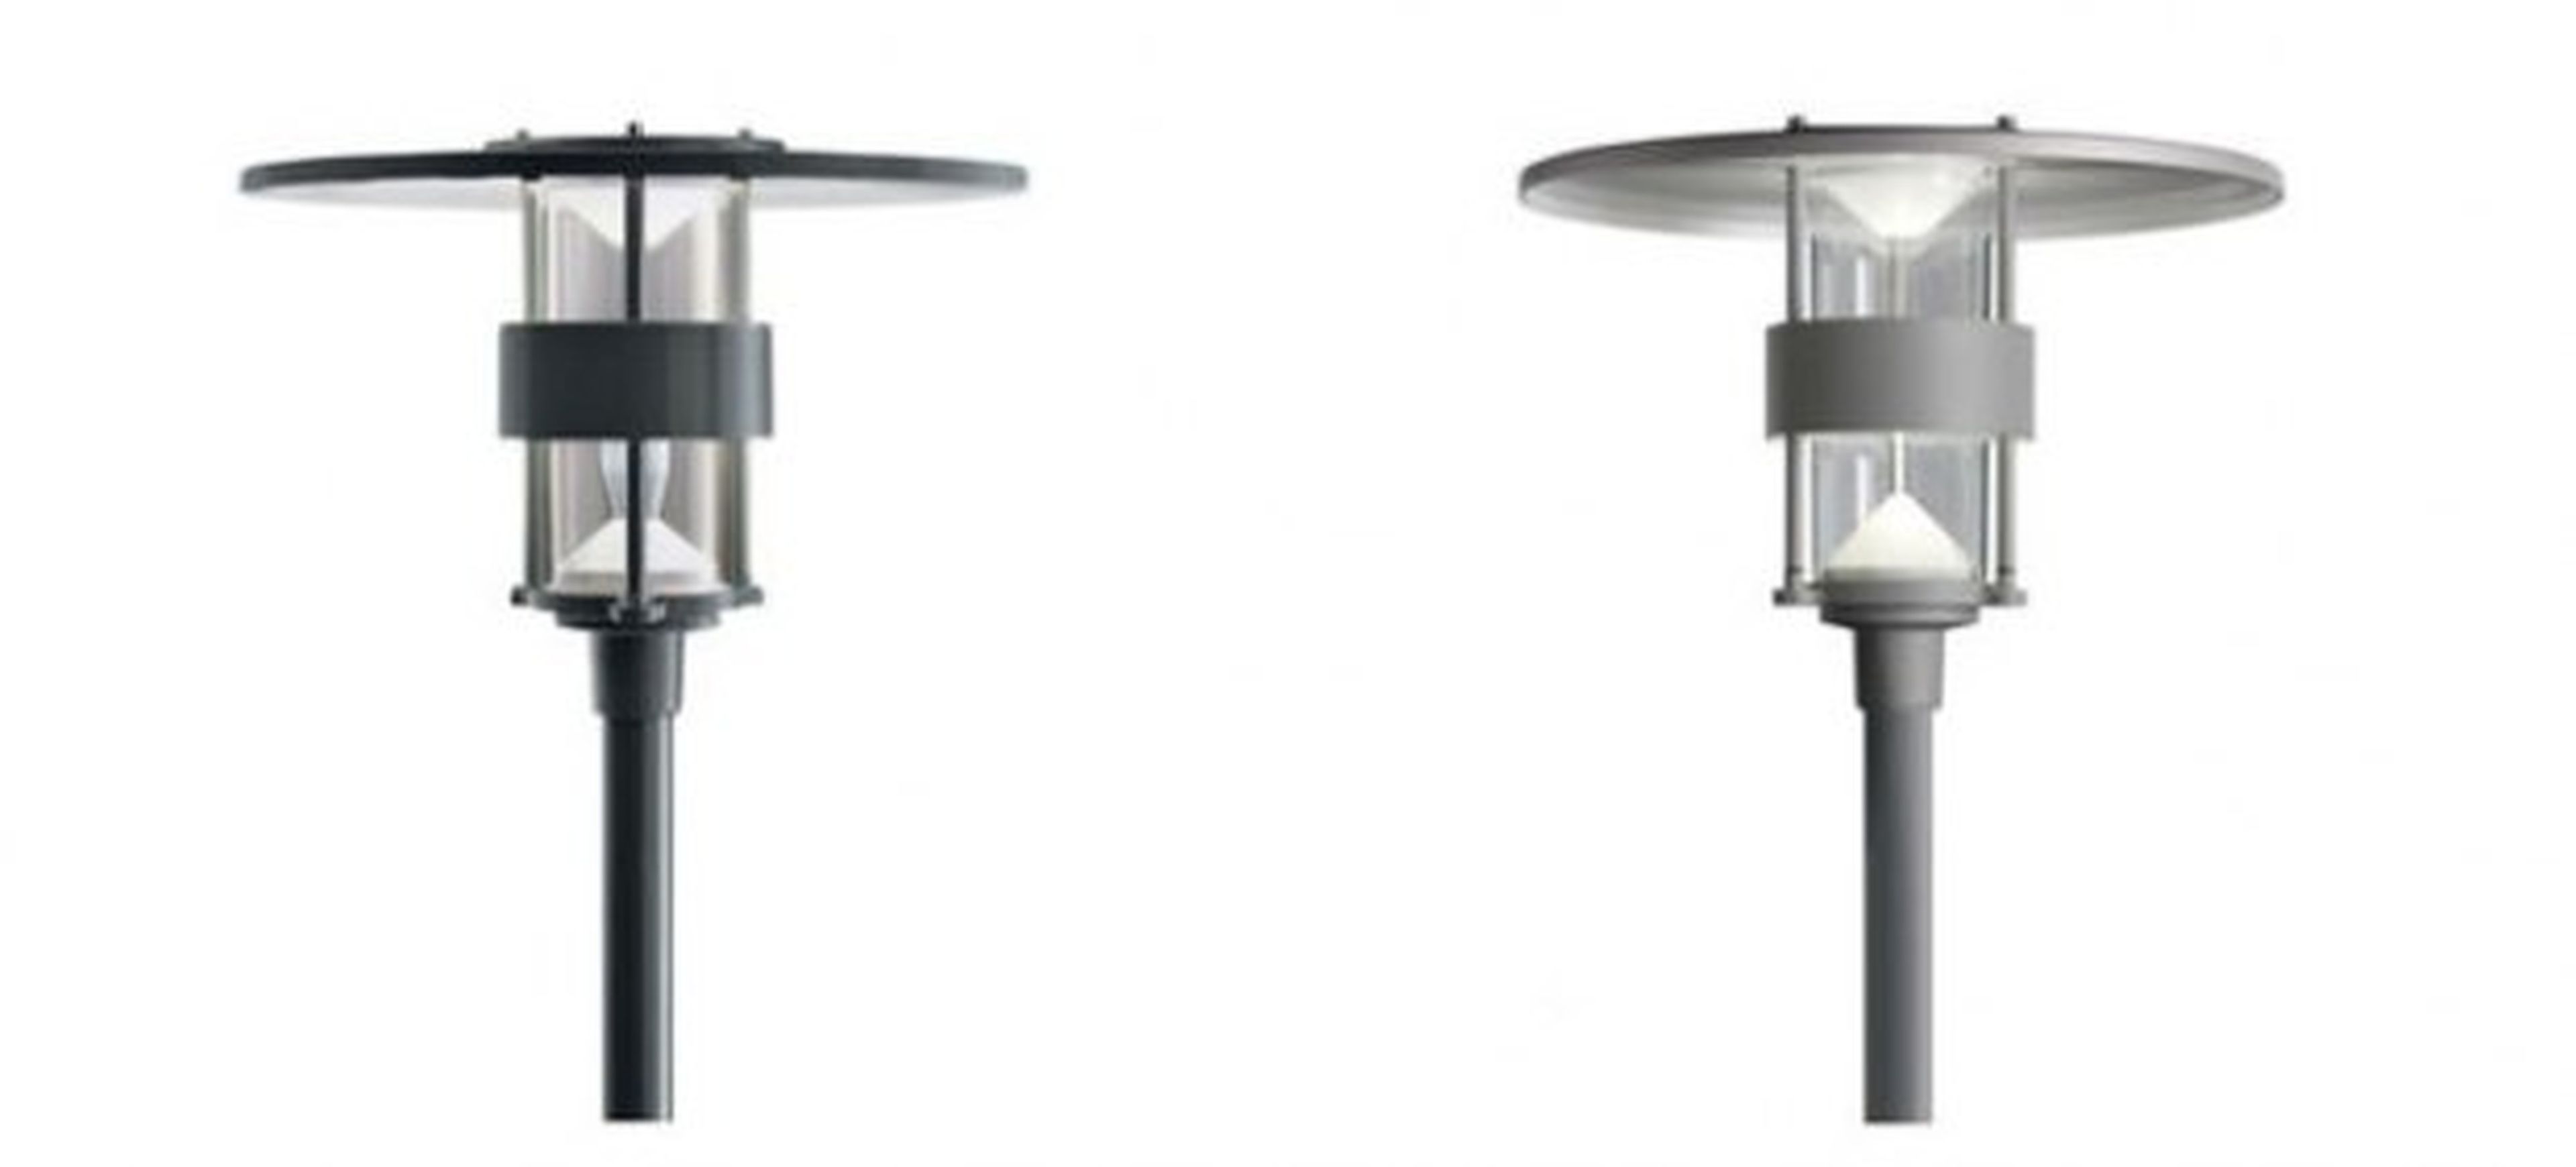 Variación de las famosas lámparas Albertslund